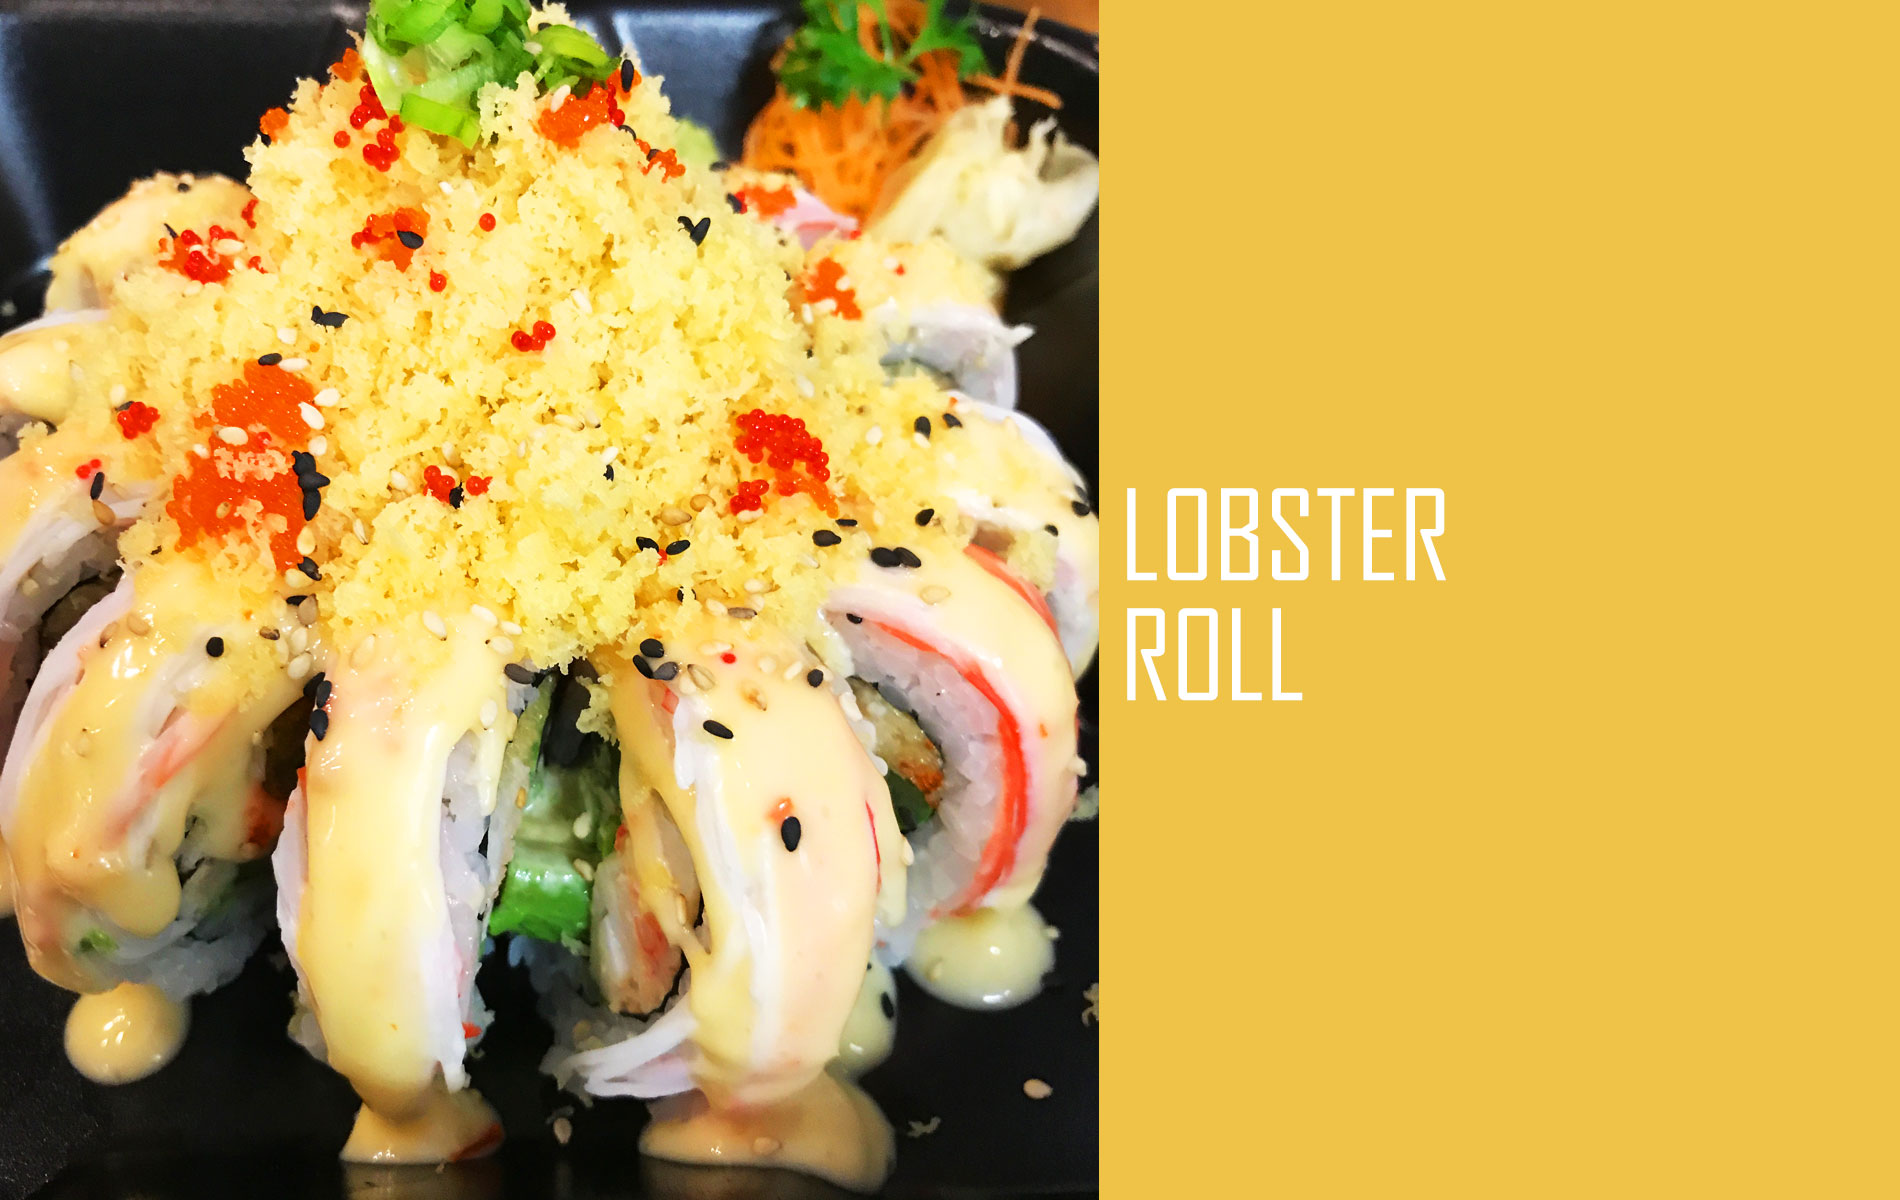 Lobster Roll - Sushi Thai Delight I-35 Location (Edmond)